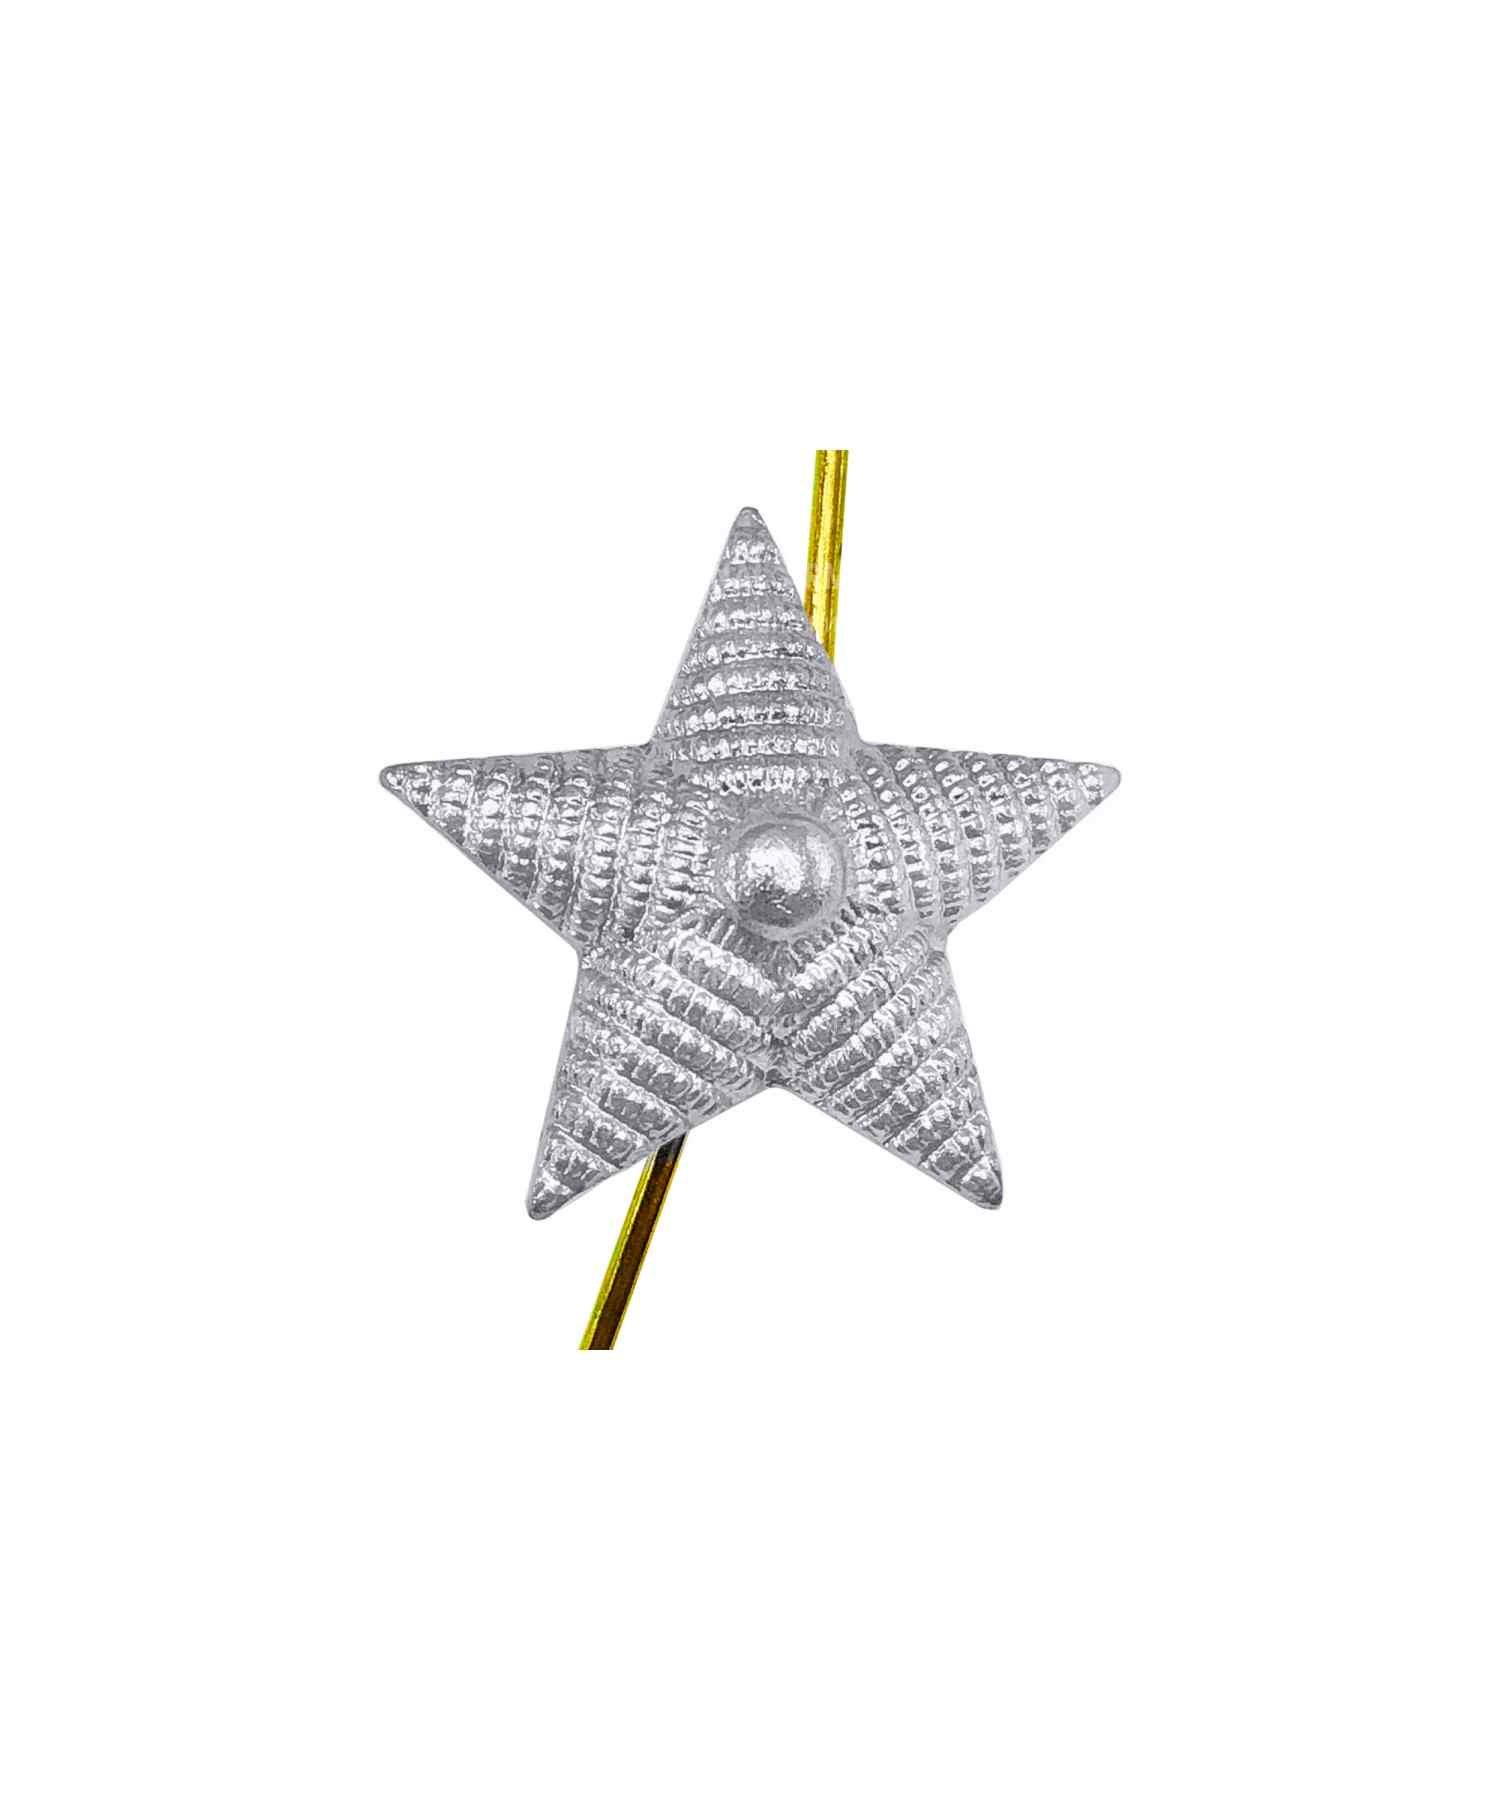 Звезда на погоны рифленая серебряная 18 мм